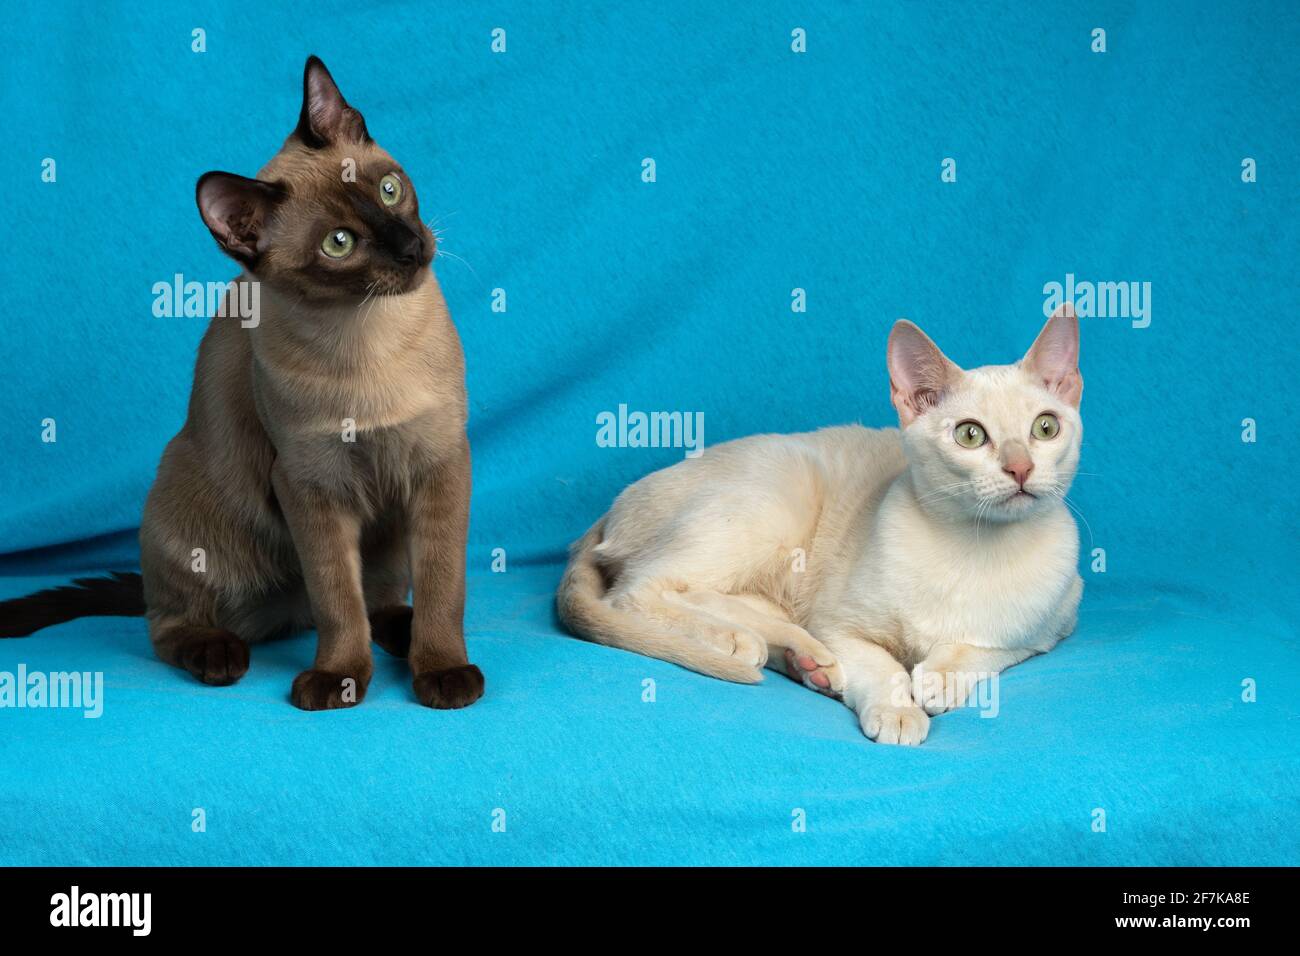 Zwei junge, reinrassige tonkinese-Katzen aus Rehkitz und Robbe mink Farben  sitzen auf dem blauen Stoffhintergrund Stockfotografie - Alamy